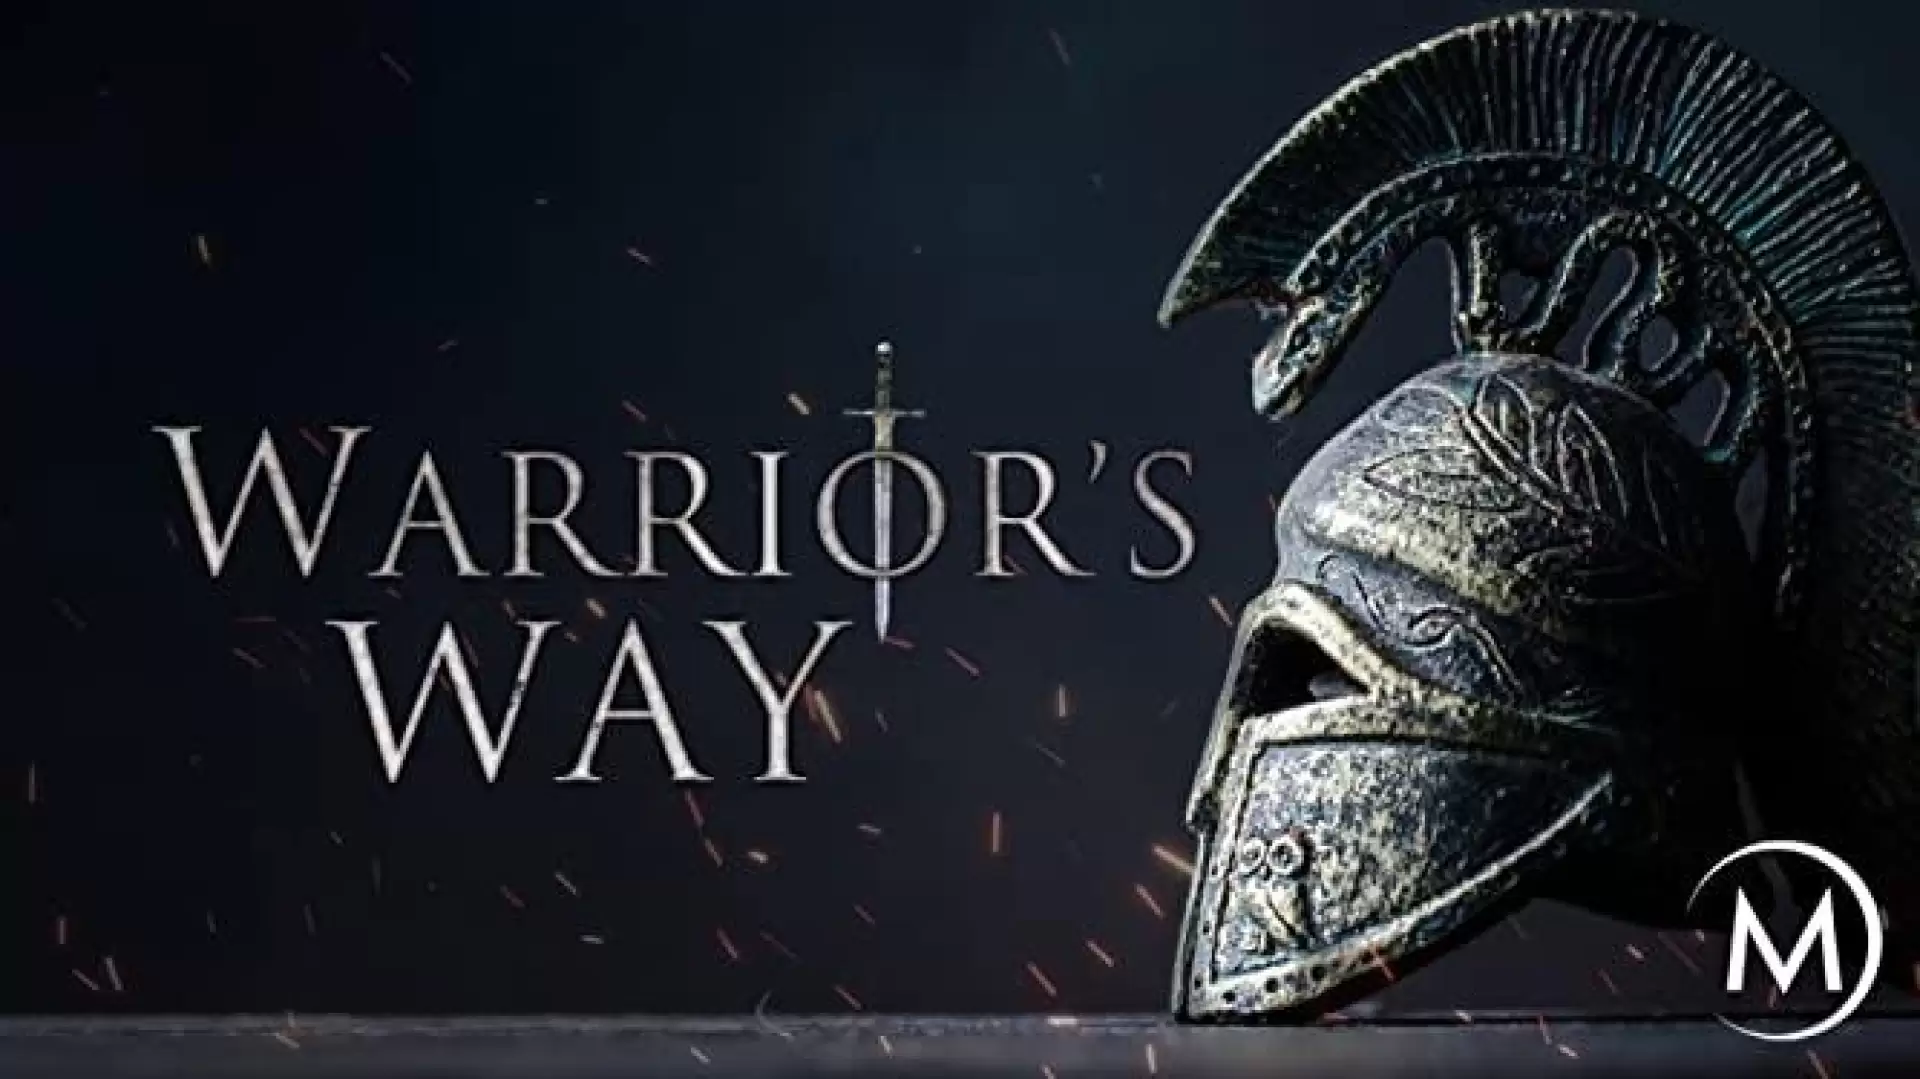 دانلود مستند The Warrior’s Way 2020 (سبک و سیاق مبارزین)